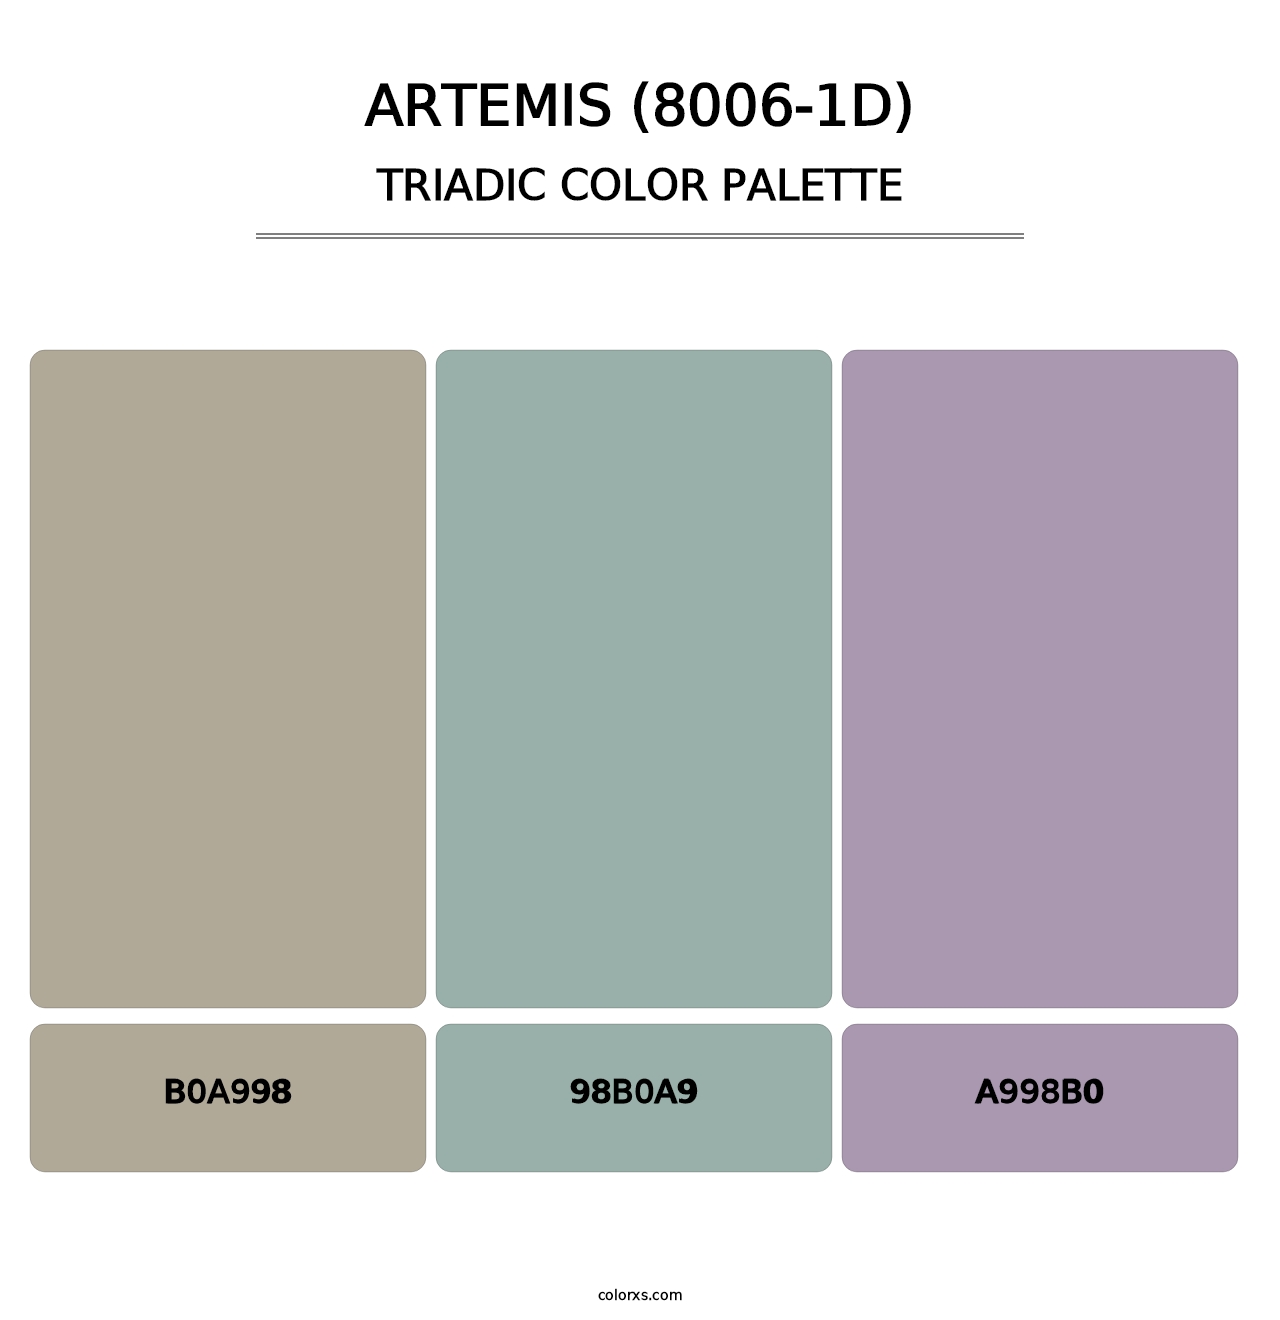 Artemis (8006-1D) - Triadic Color Palette